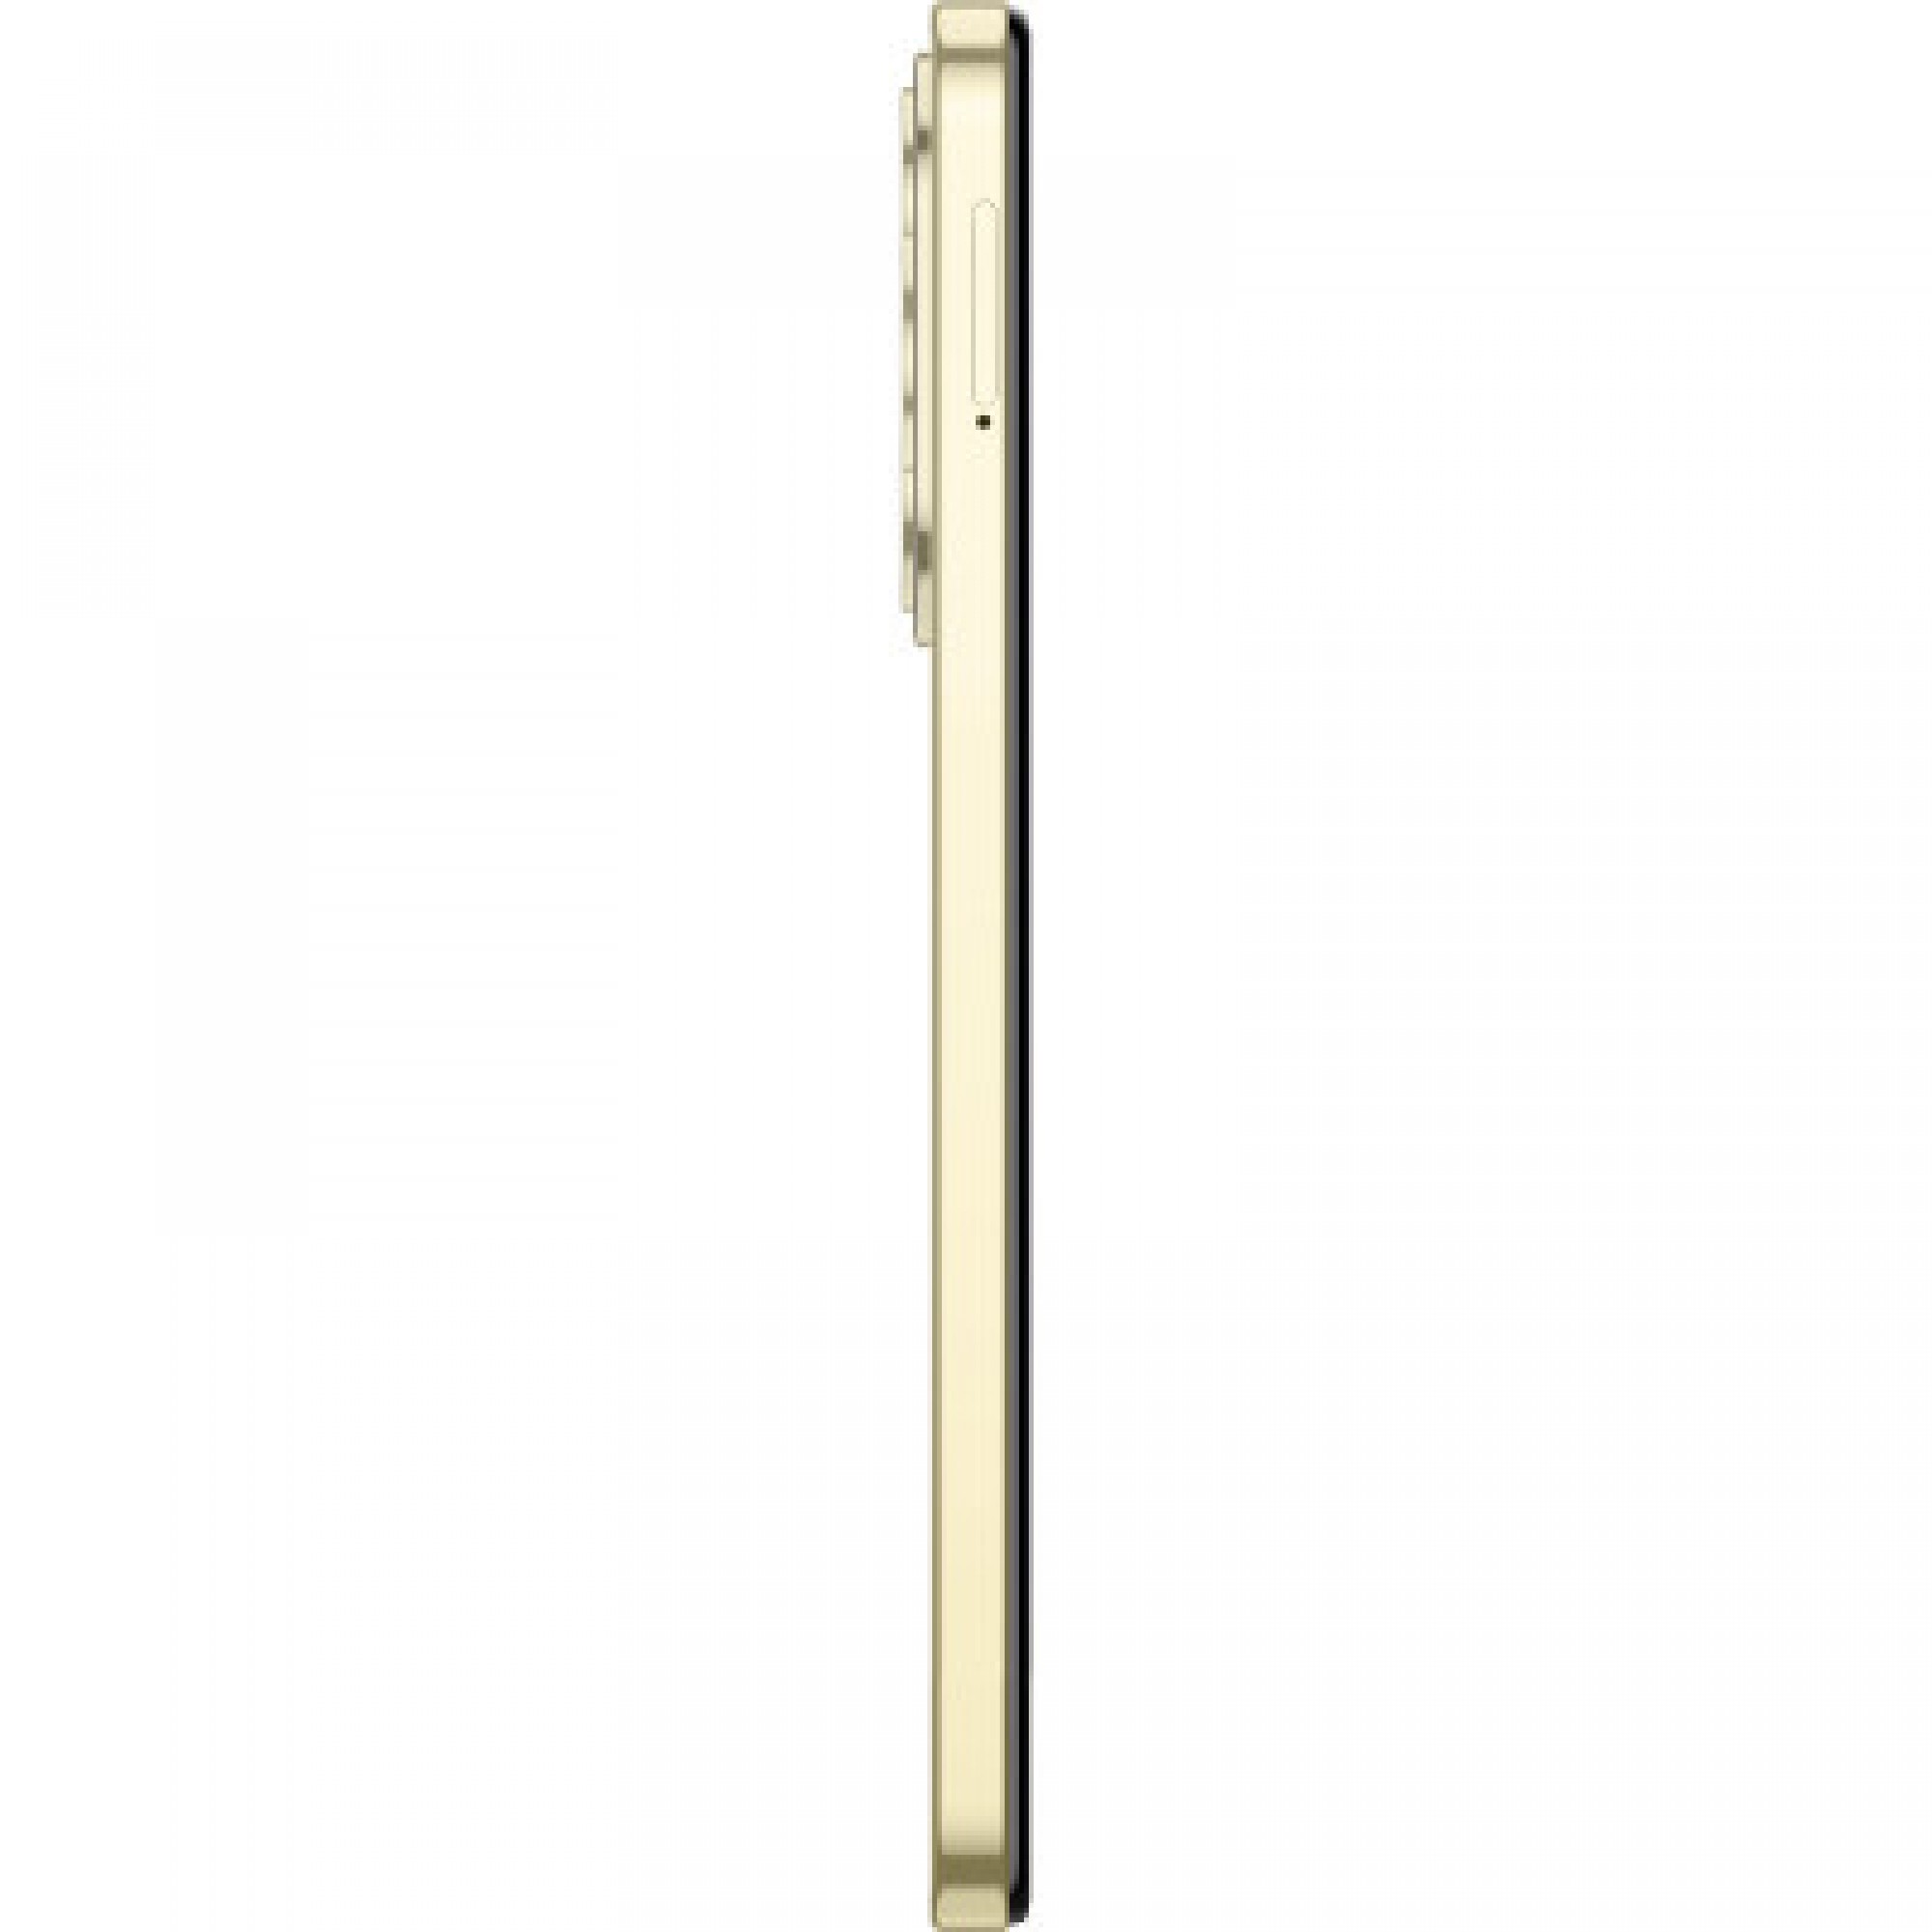 Мобільний телефон Tecno Spark 20 8/128Gb Neon Gold (4894947013560)